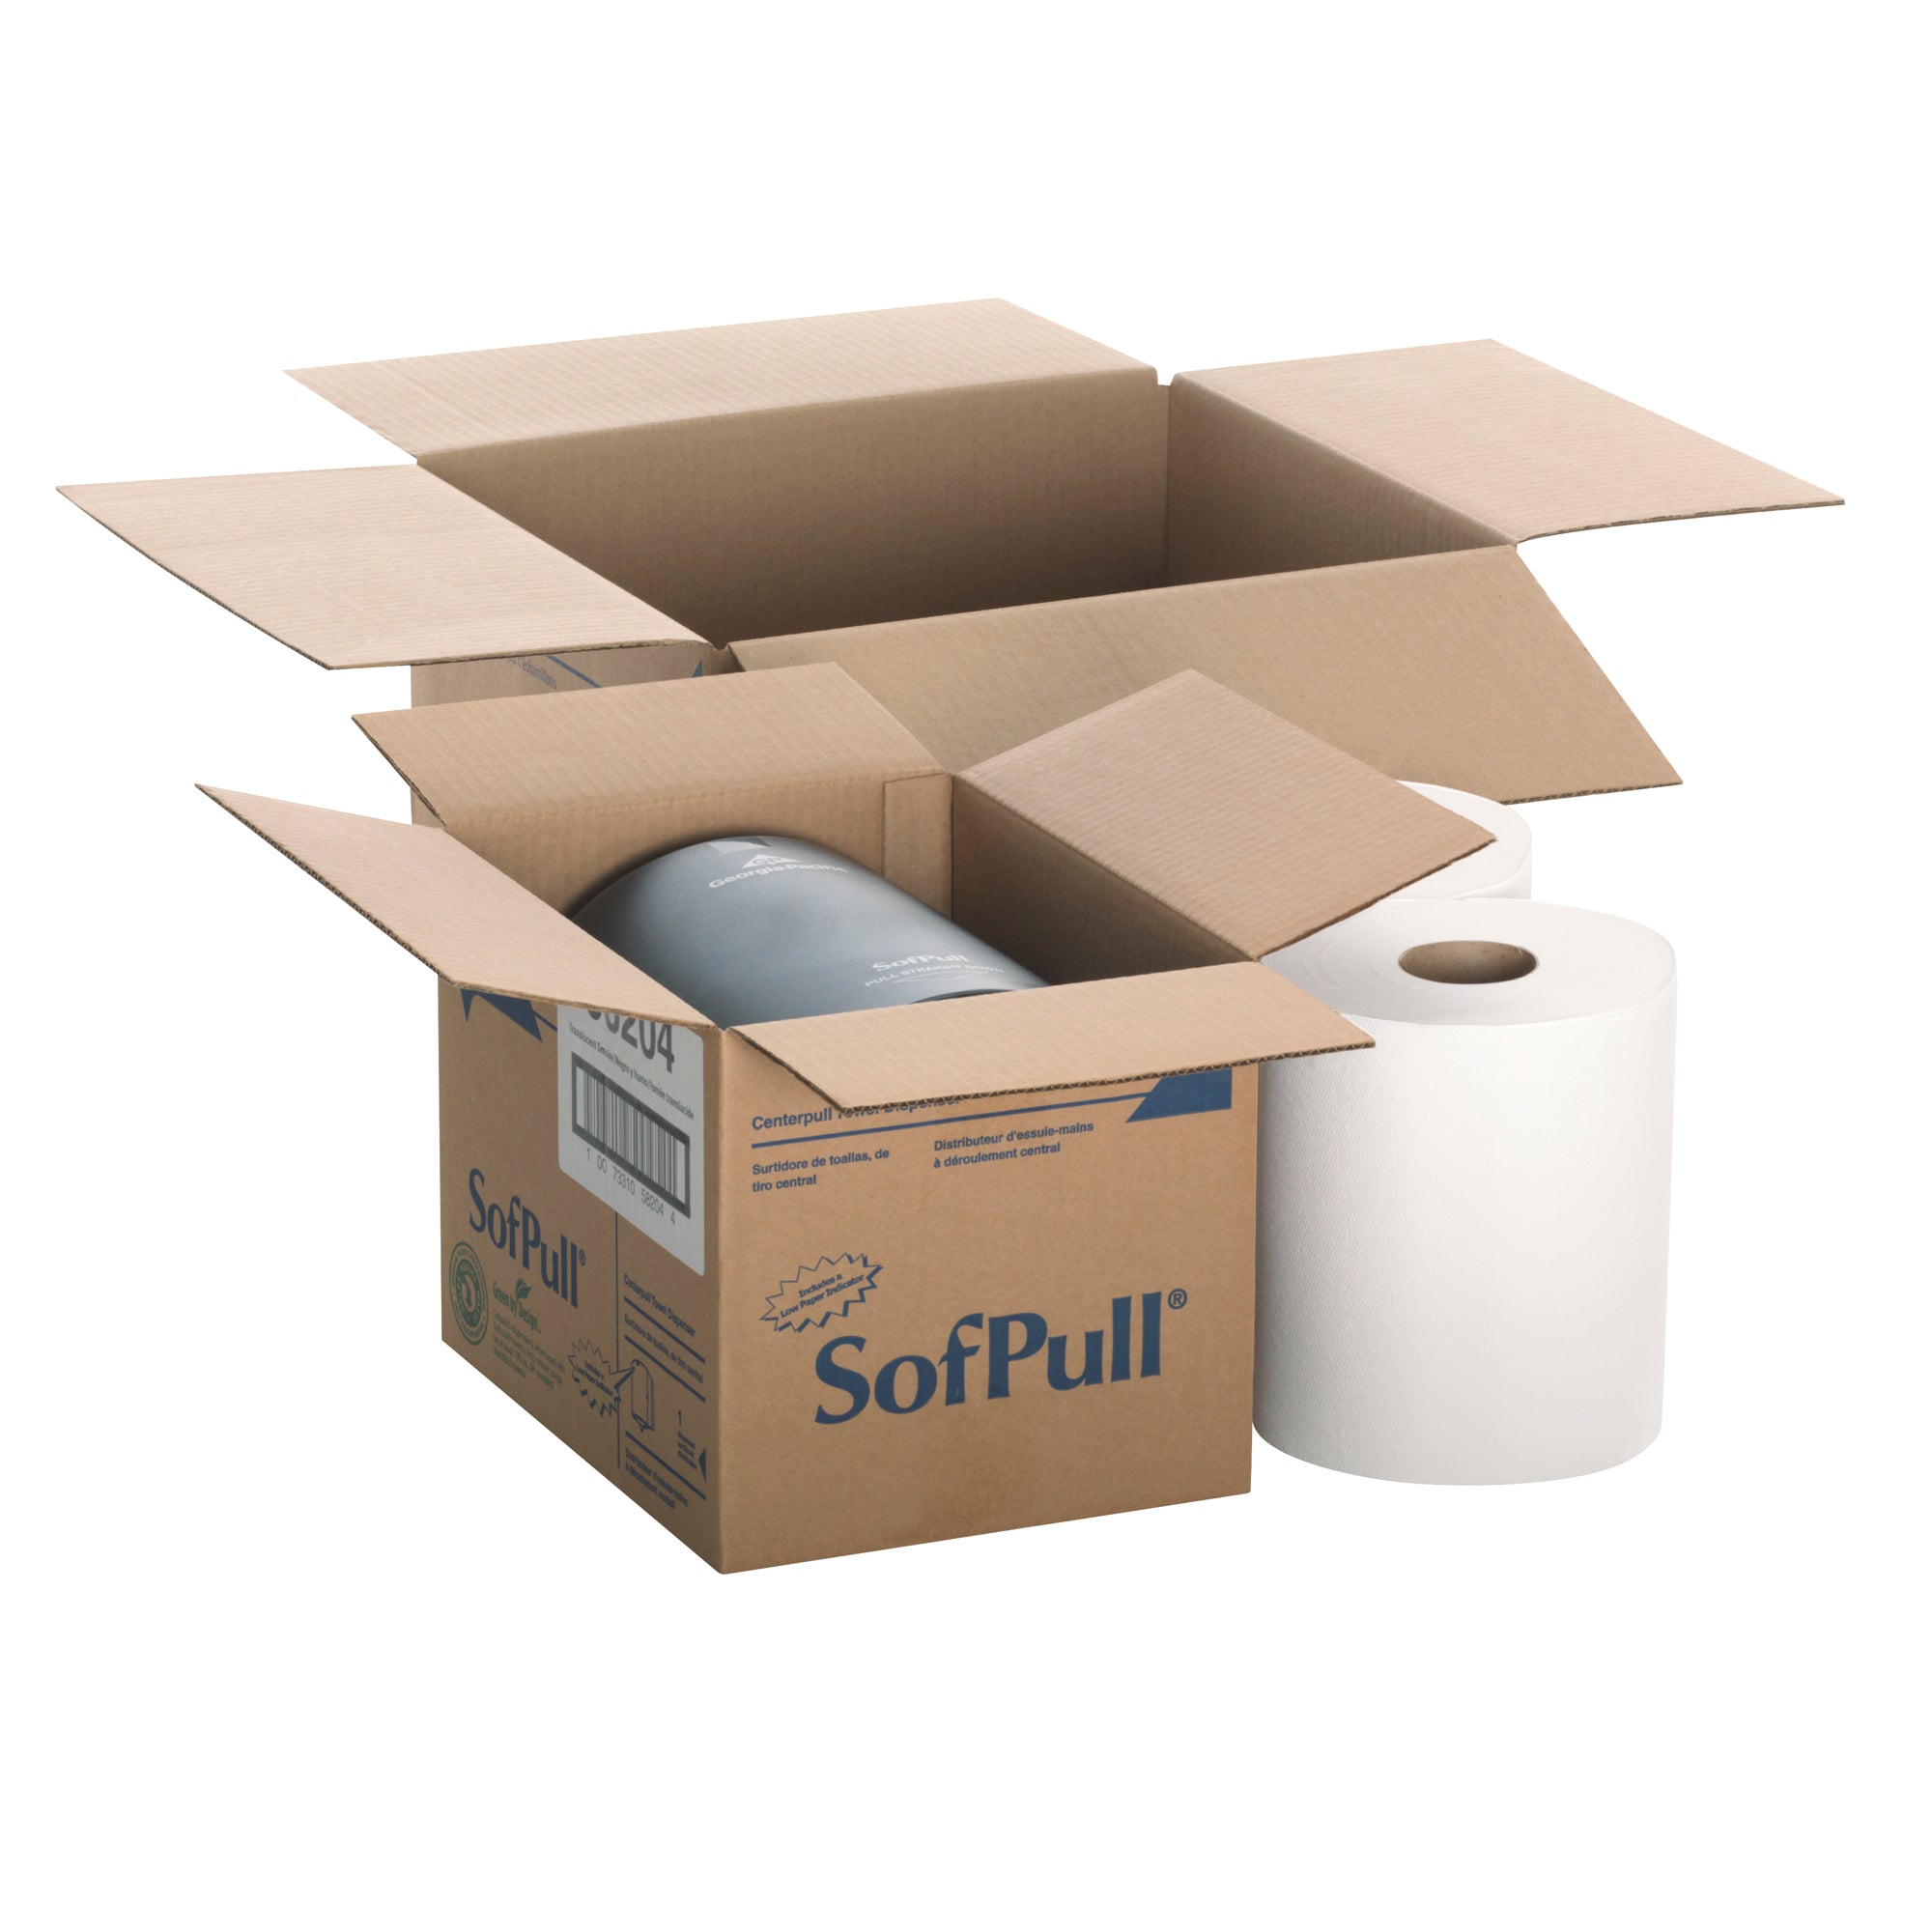 ערכת ניסיון של מתקן מגבות נייר בקיבולת רגילה של SOFPULL® CENTERPULL, מתקן אחד 58204 ושני גלילי מגבות נייר 28124